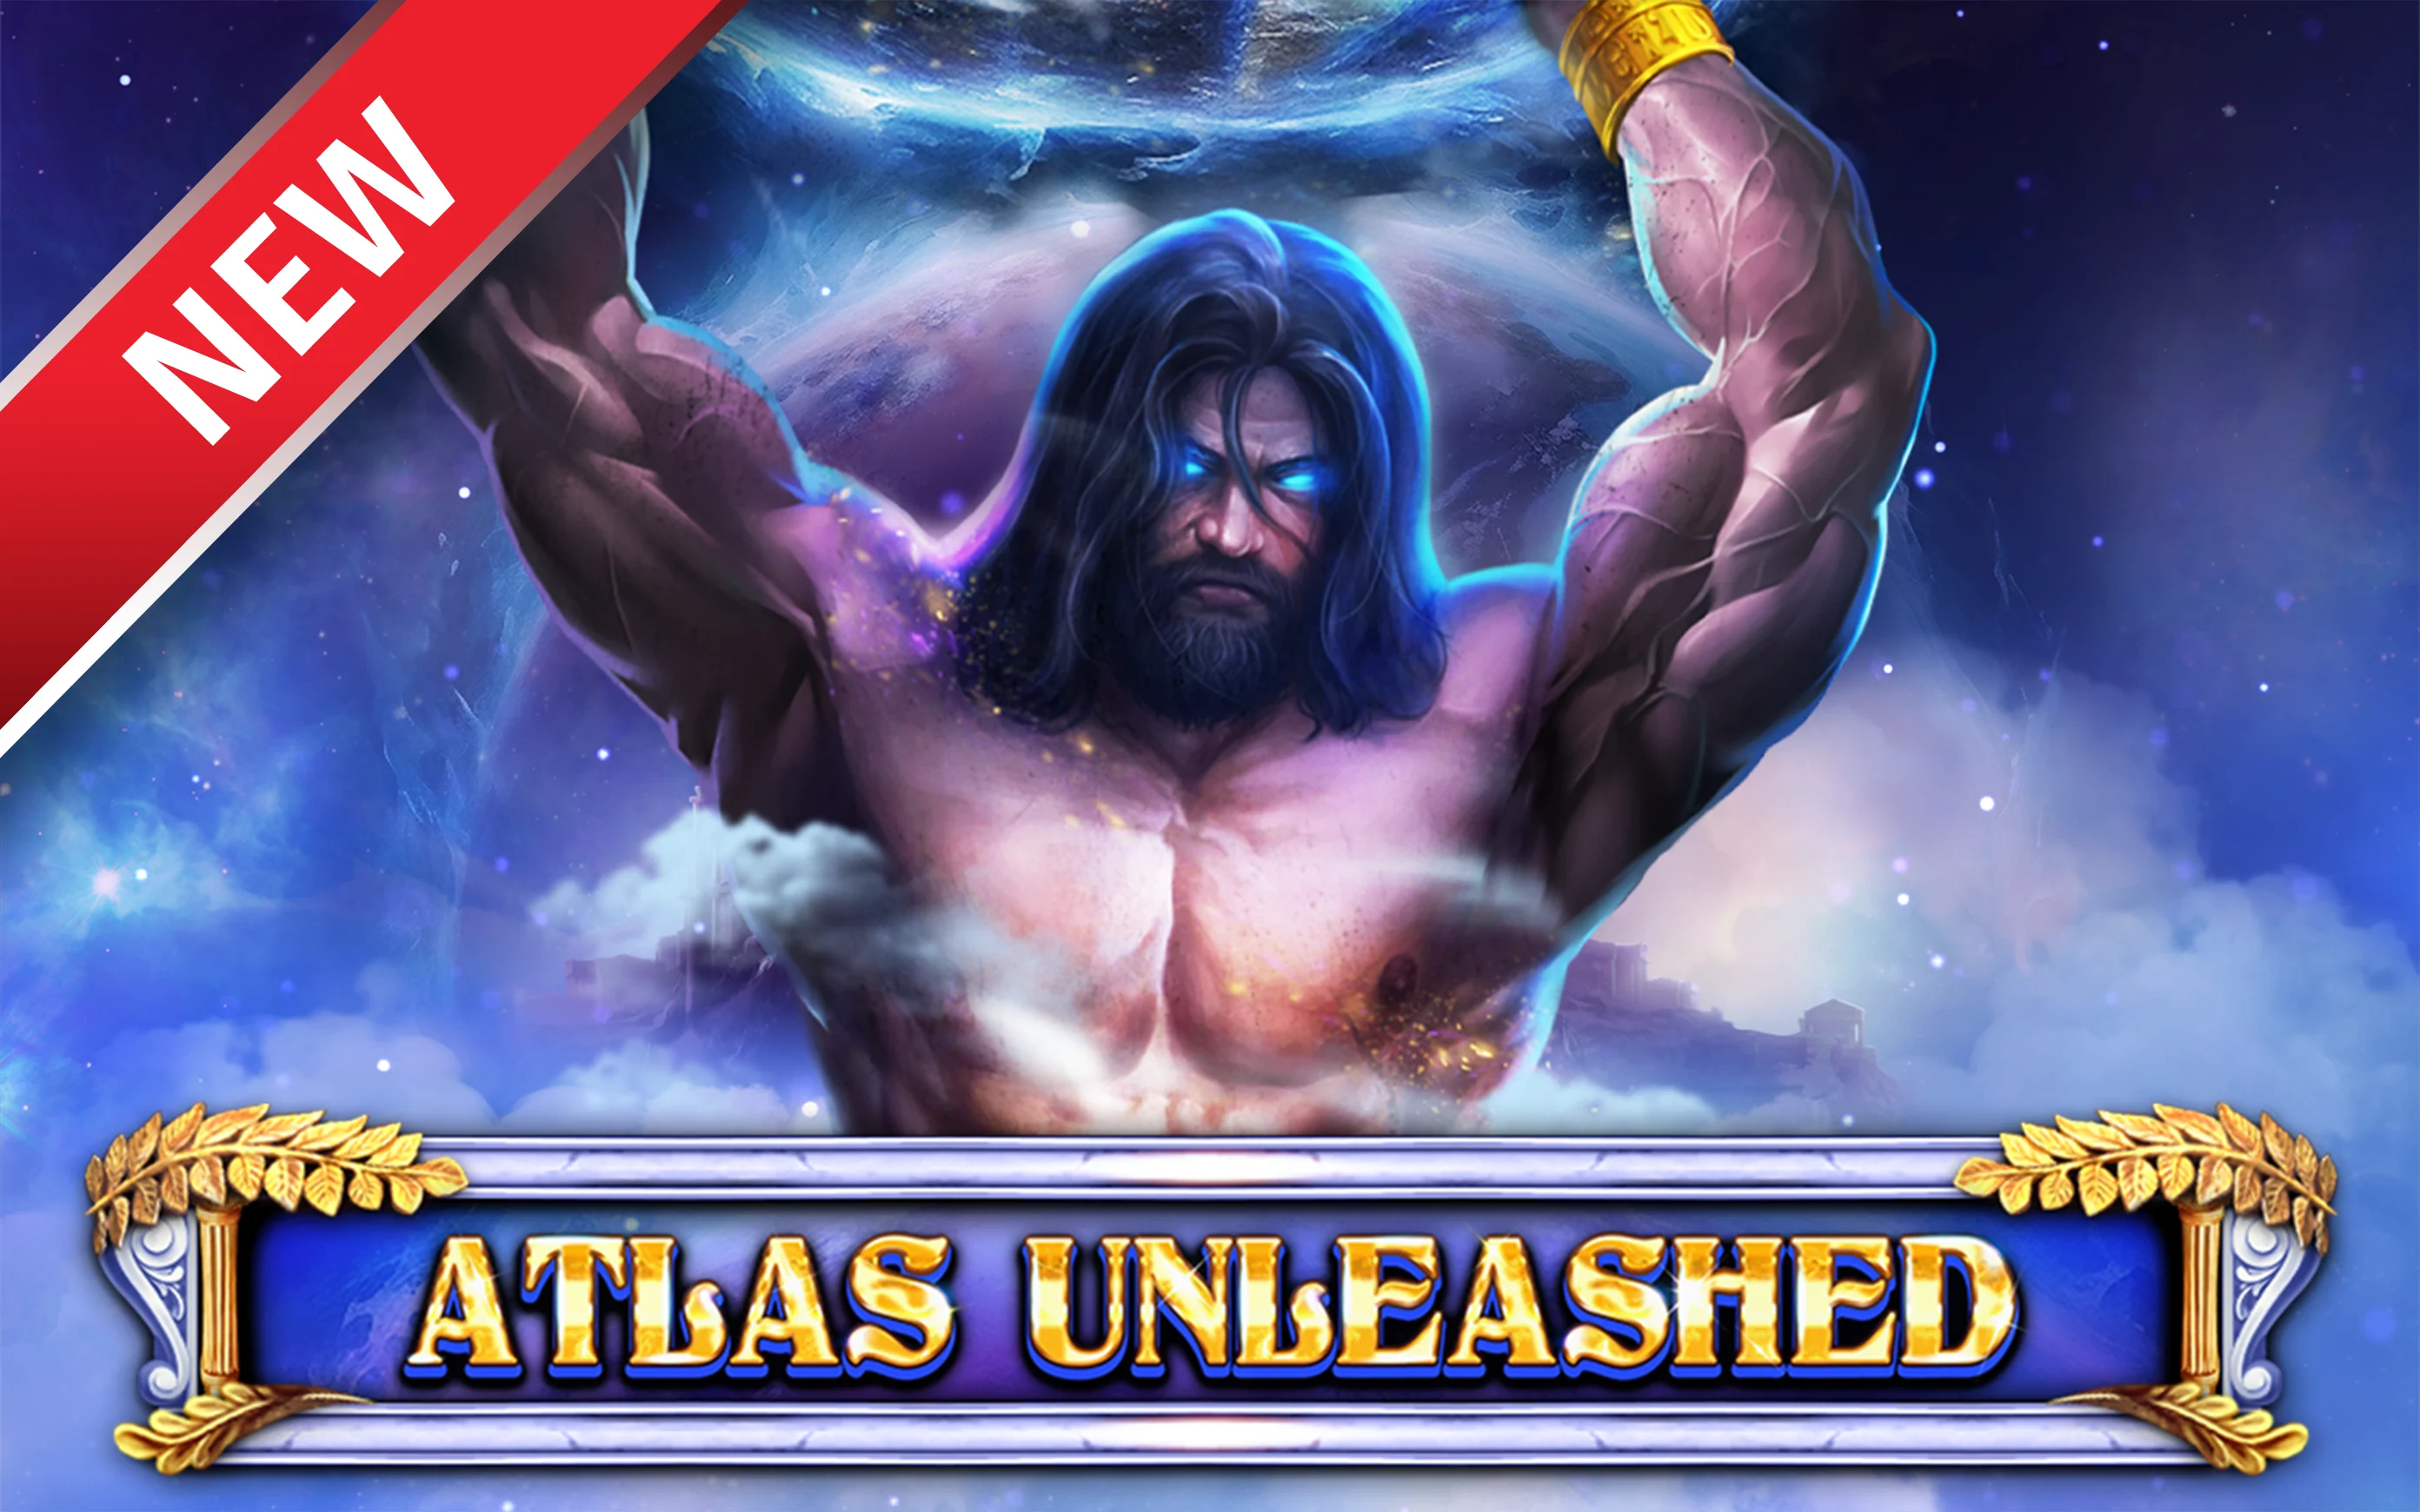 Zagraj w Atlas Unleashed w kasynie online Starcasino.be